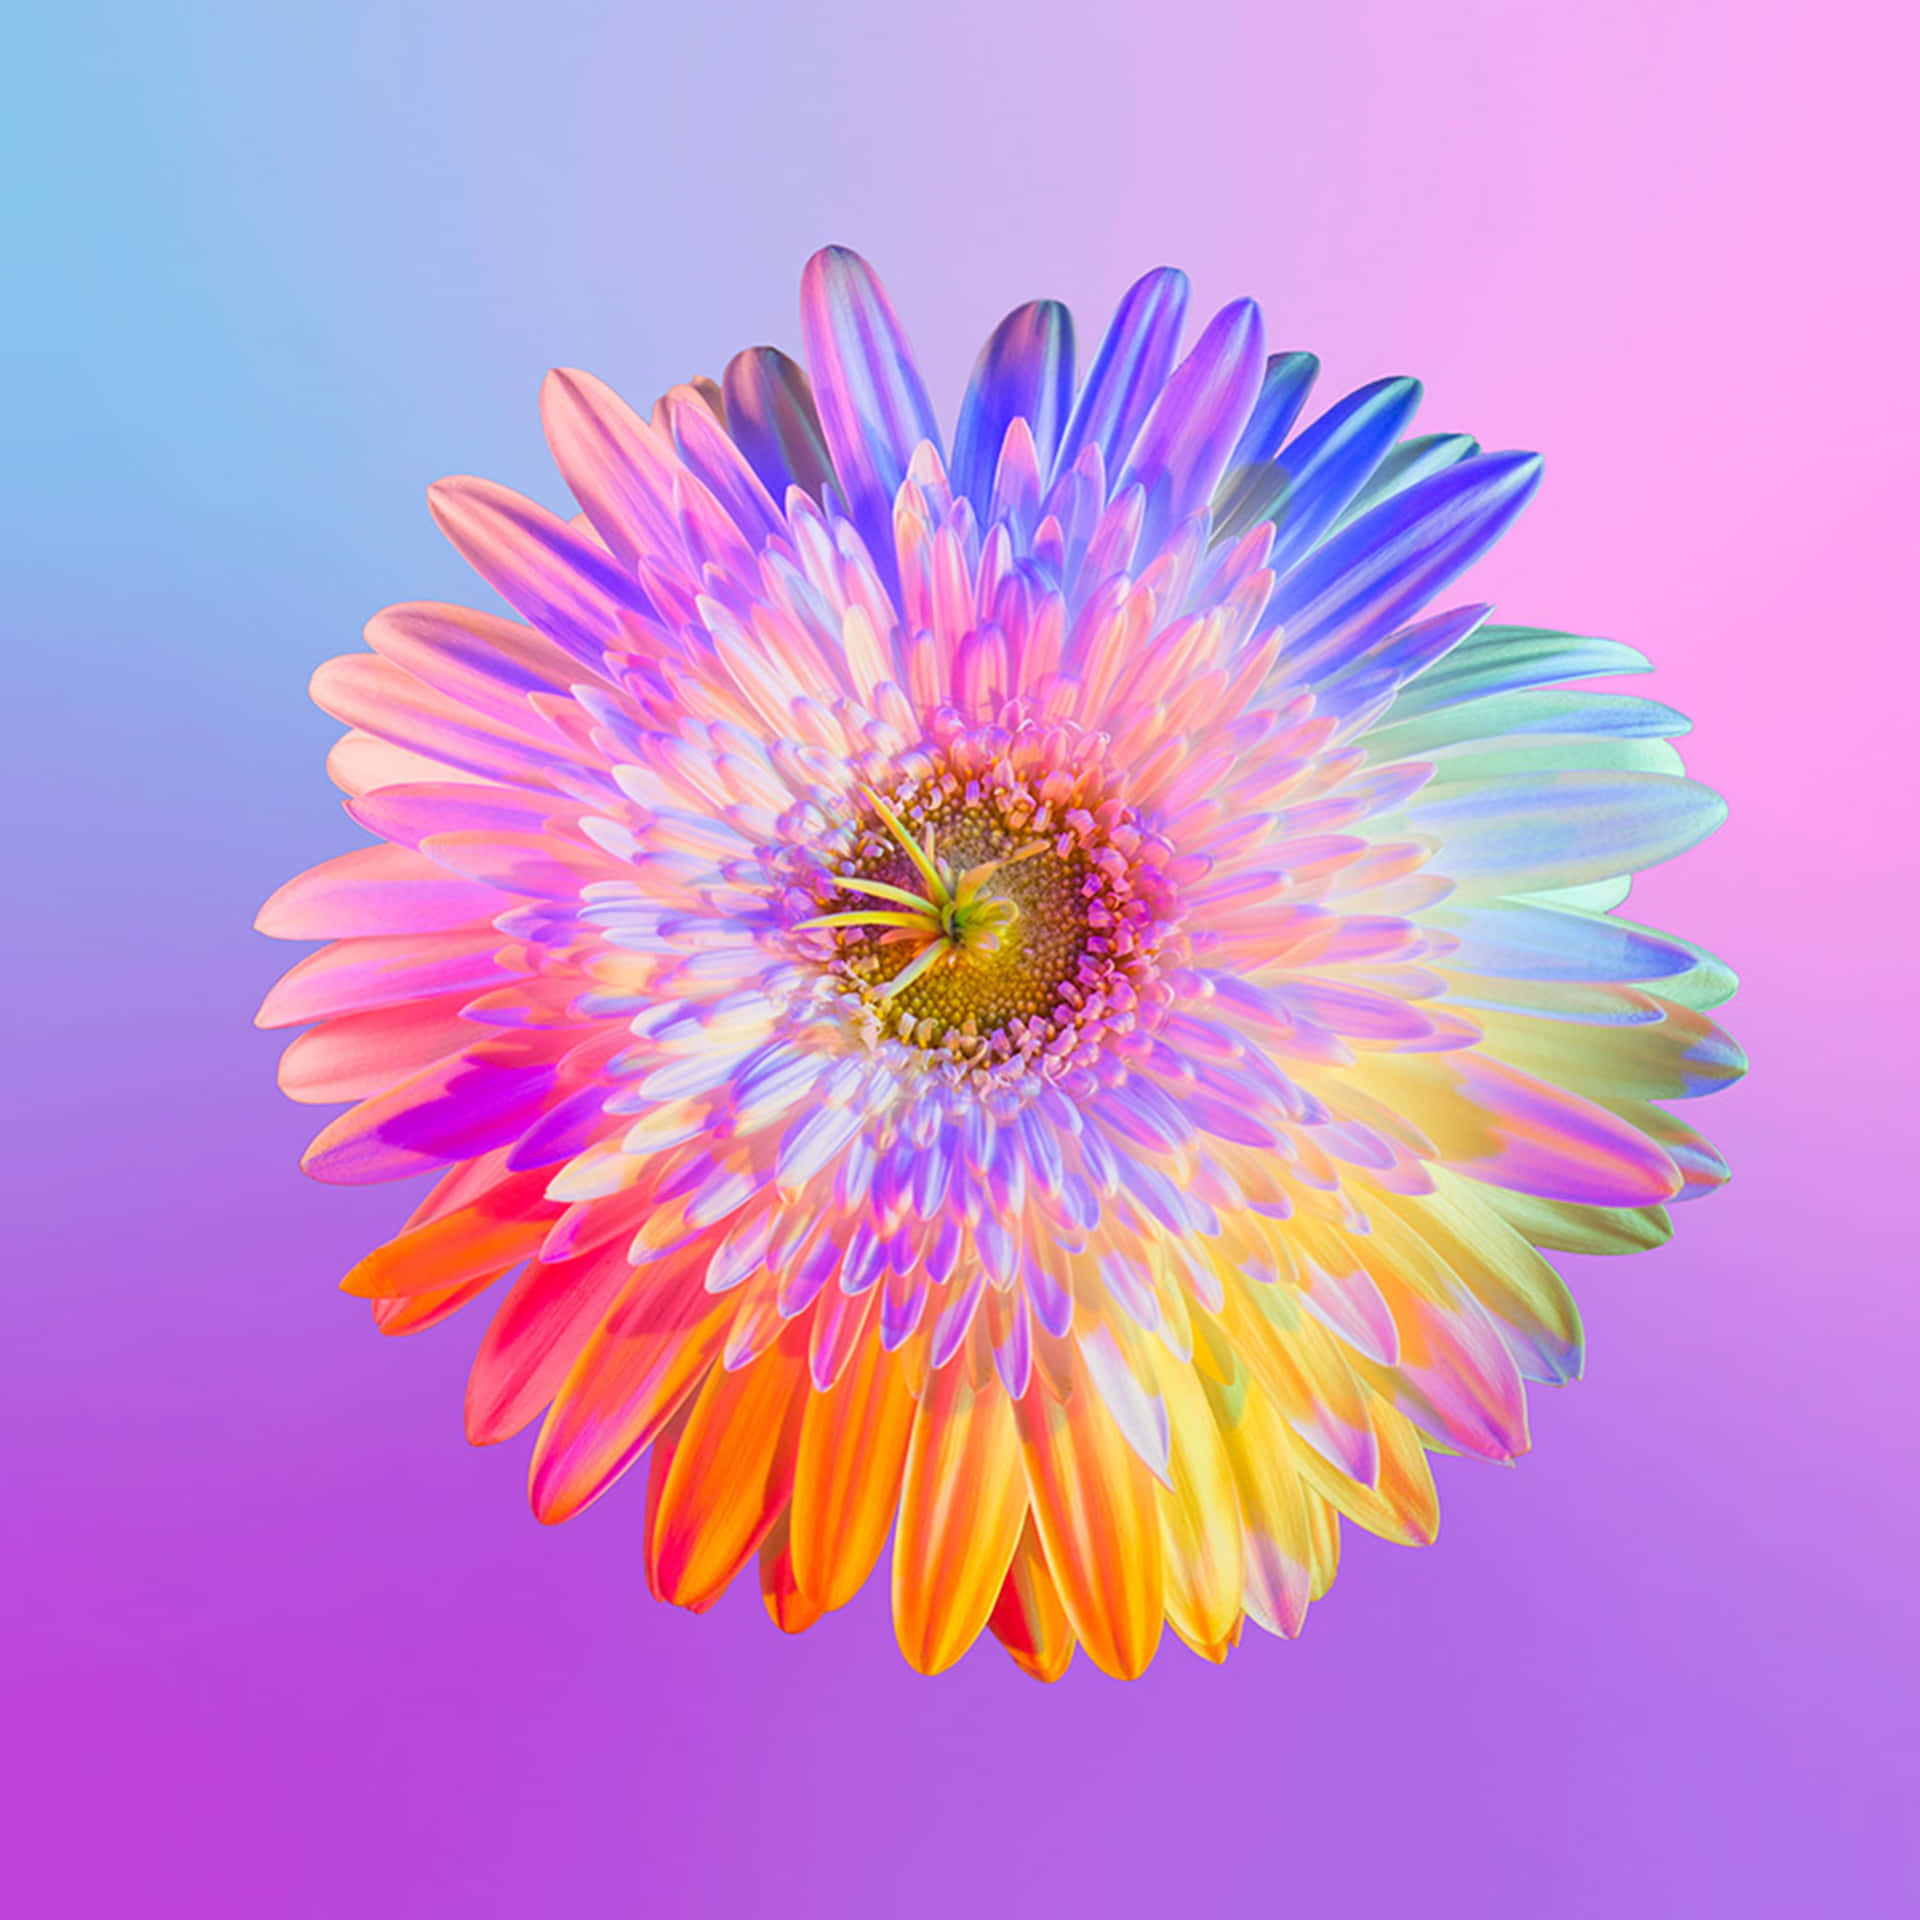 Einebunte Blume Auf Einem Rosa Und Violetten Hintergrund Wallpaper